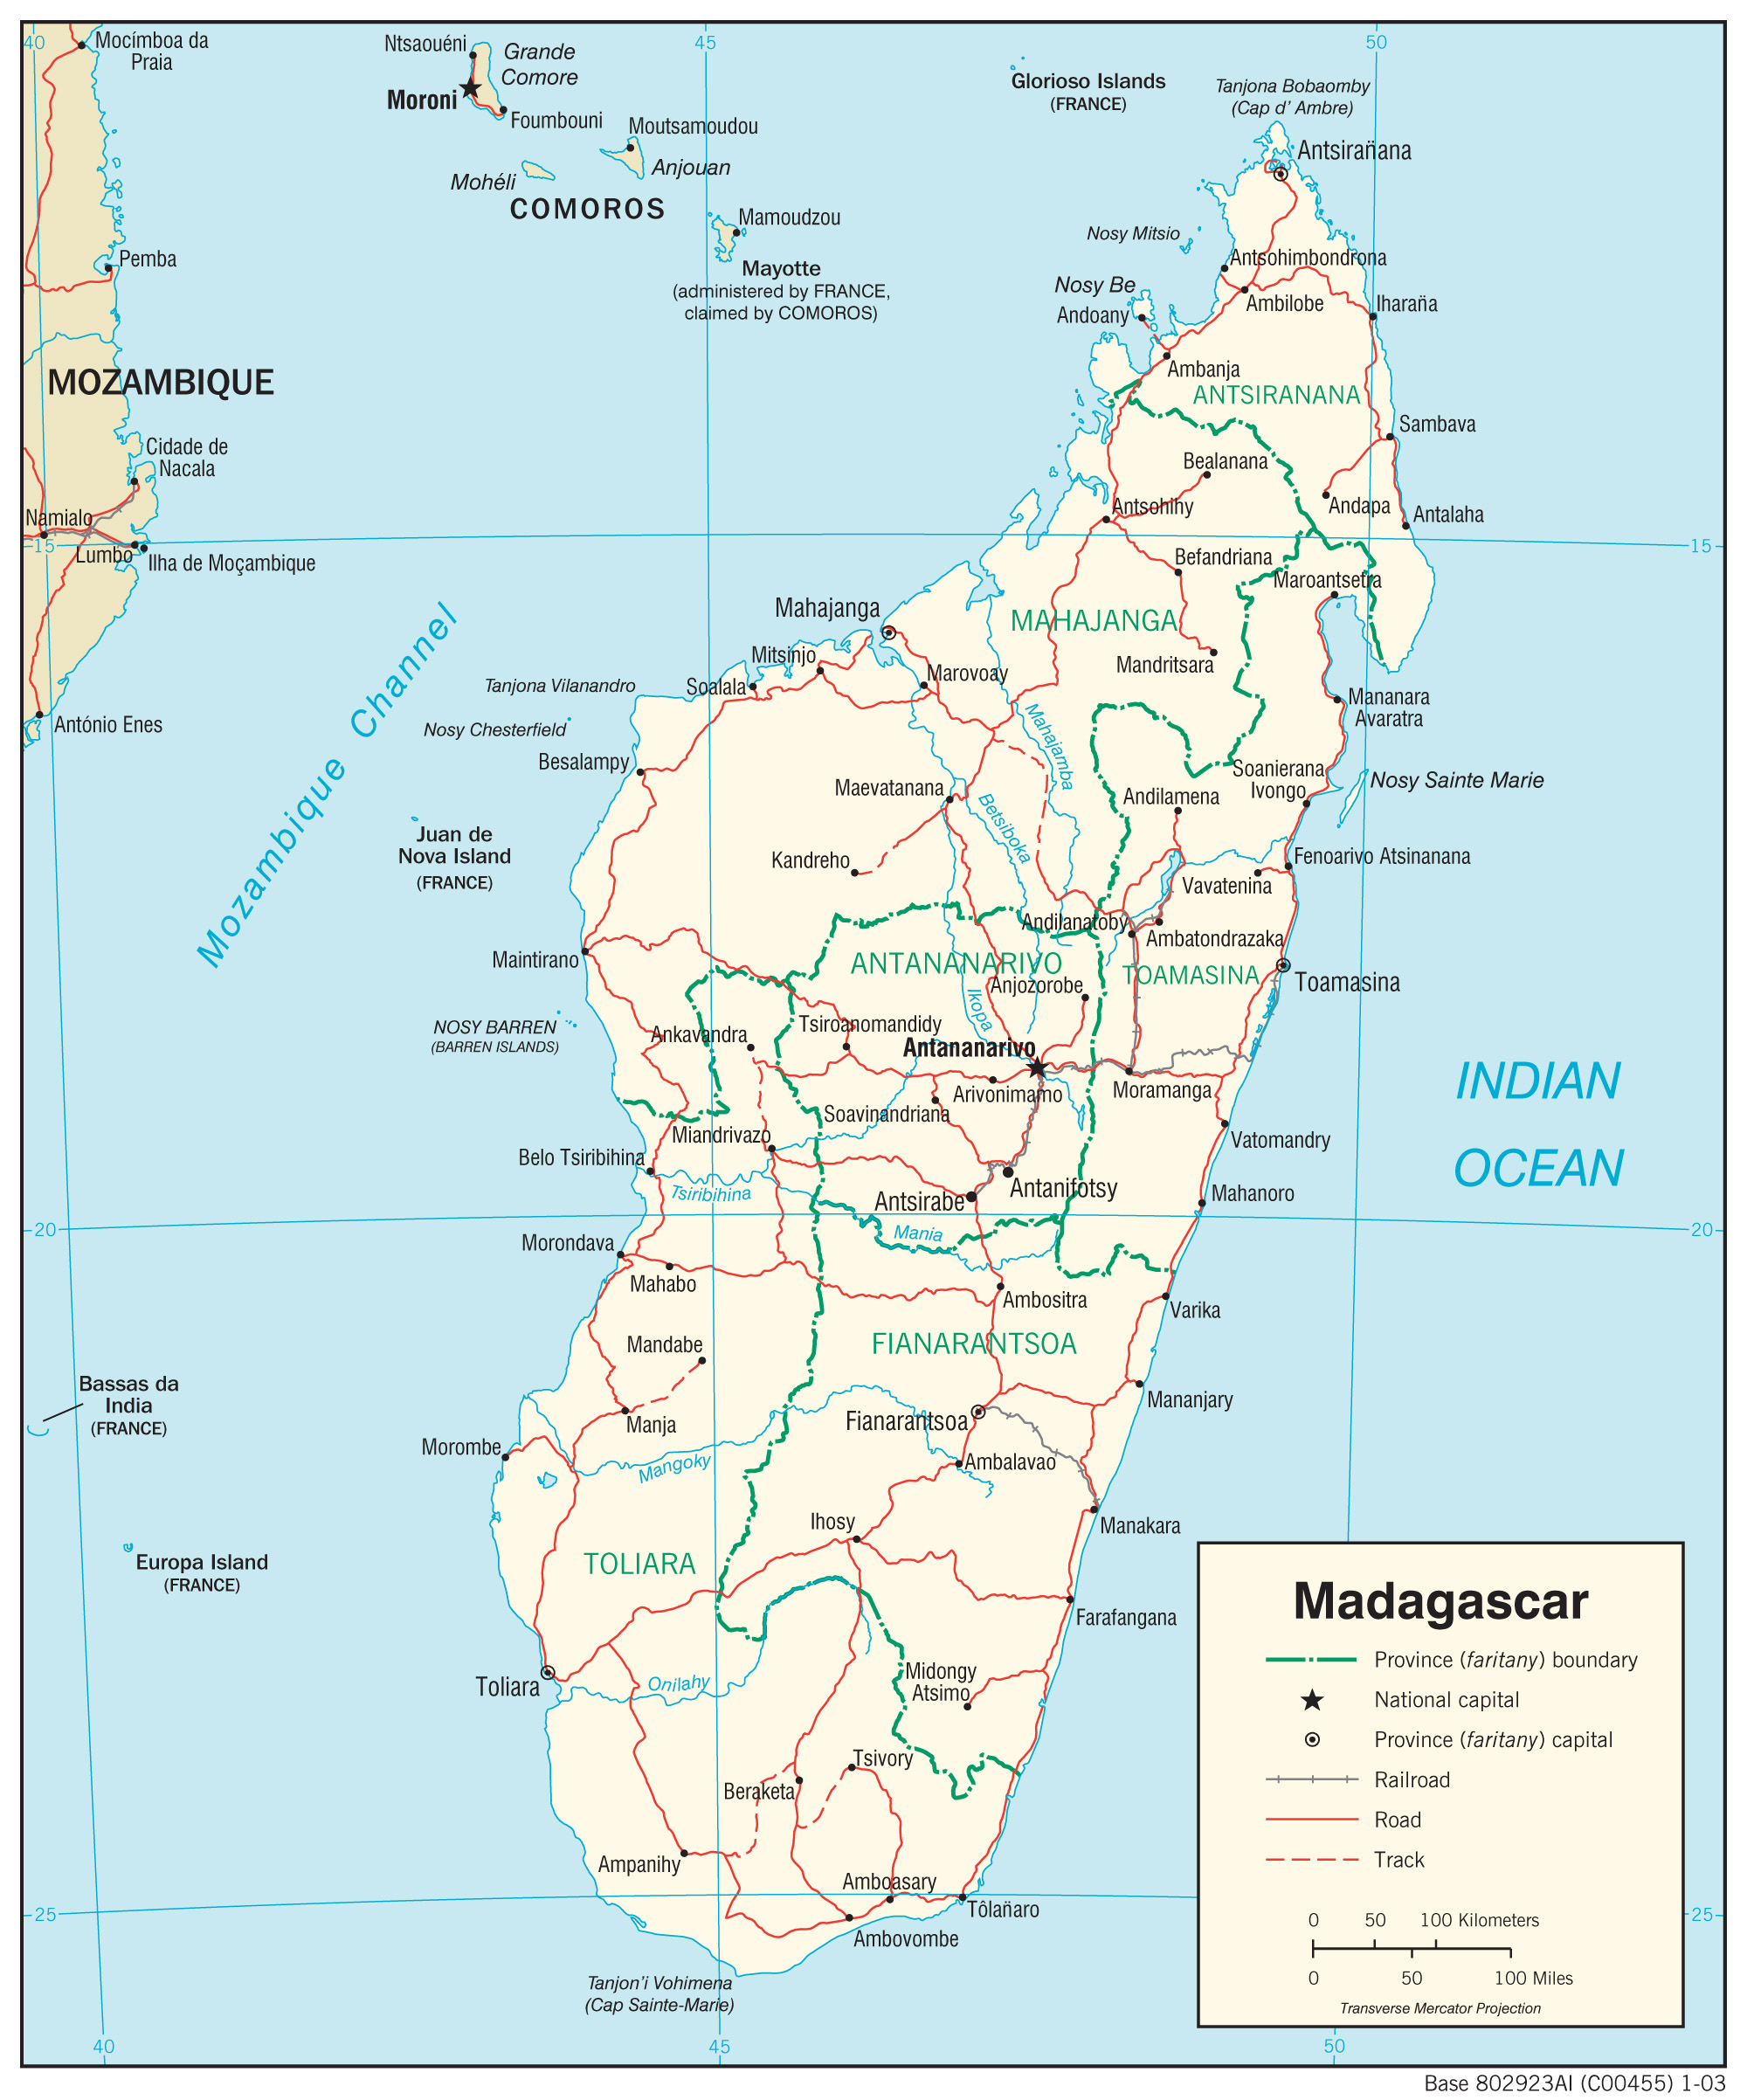 mapa_madagascar.jpg